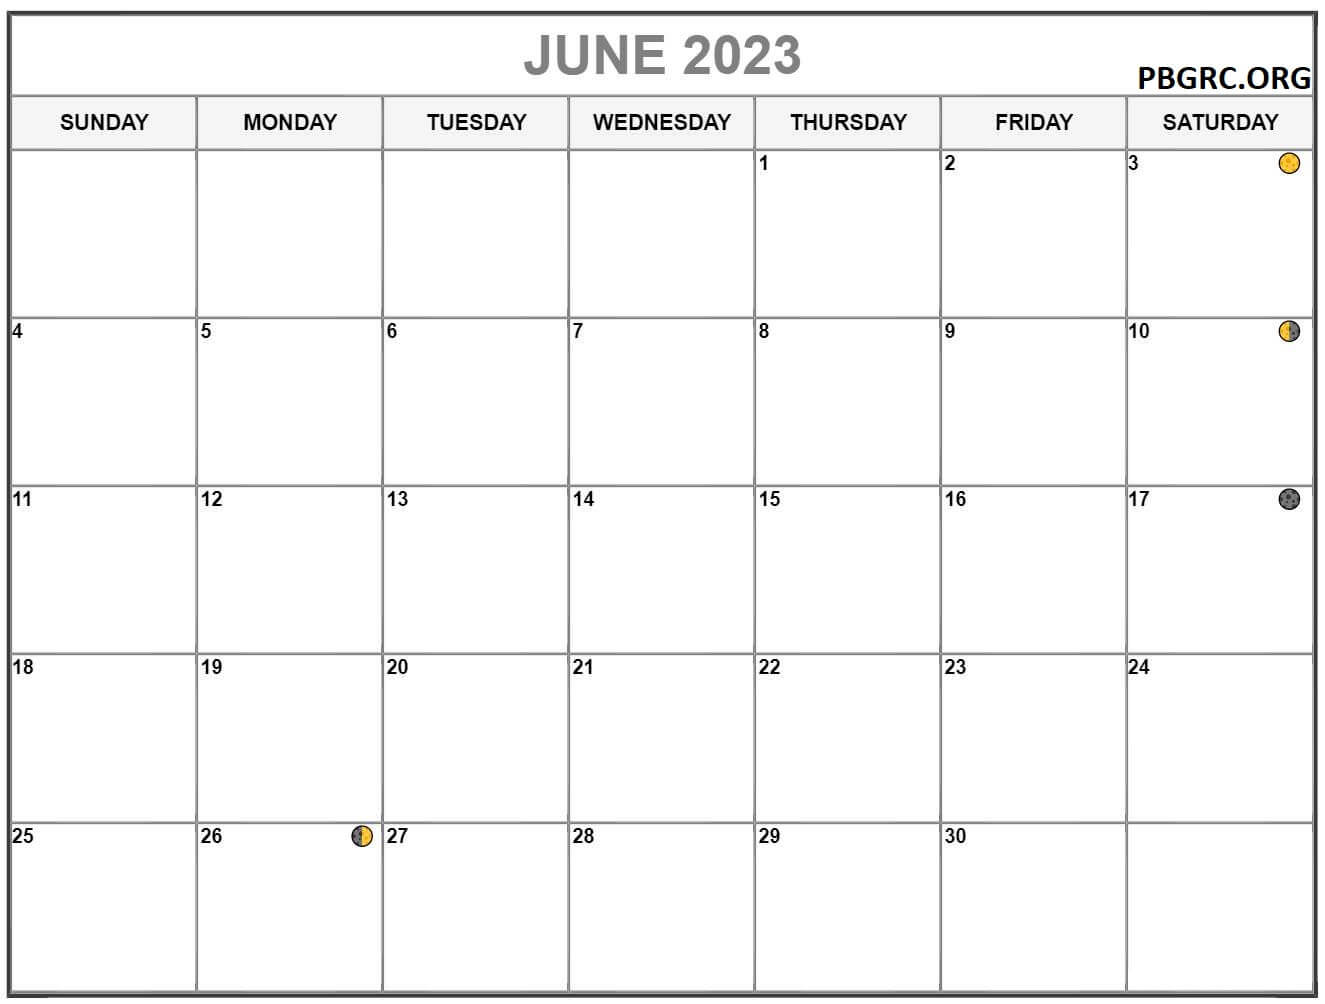 June 2023 Lunar Calendar